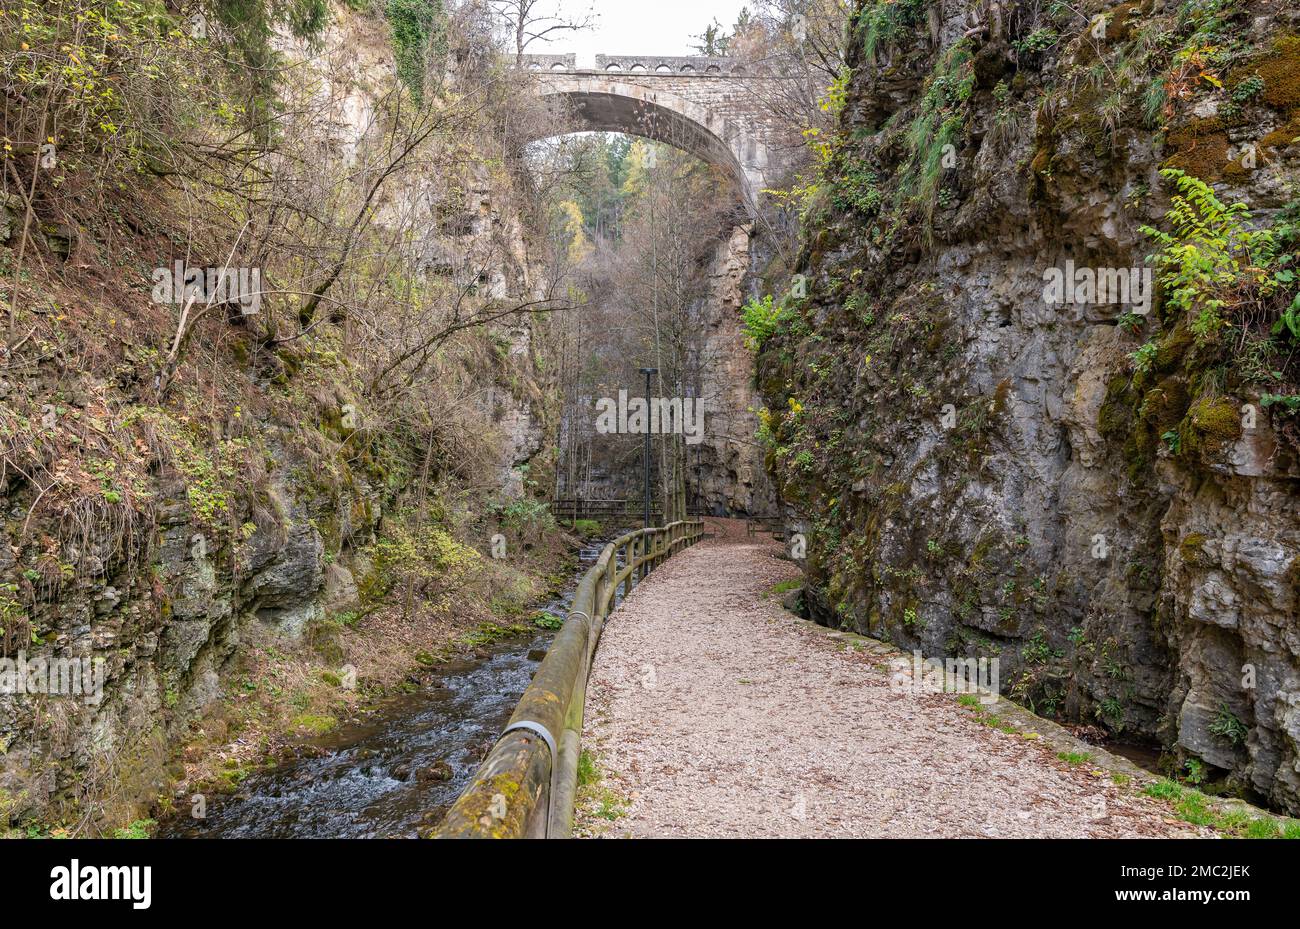 Canyon Rio Sass - Fondo (Borgo d'Anaunia) - non Valley - Trentino Alto Adige - Italia settentrionale: Un'escursione panoramica tra strette pareti rocciose. Foto Stock